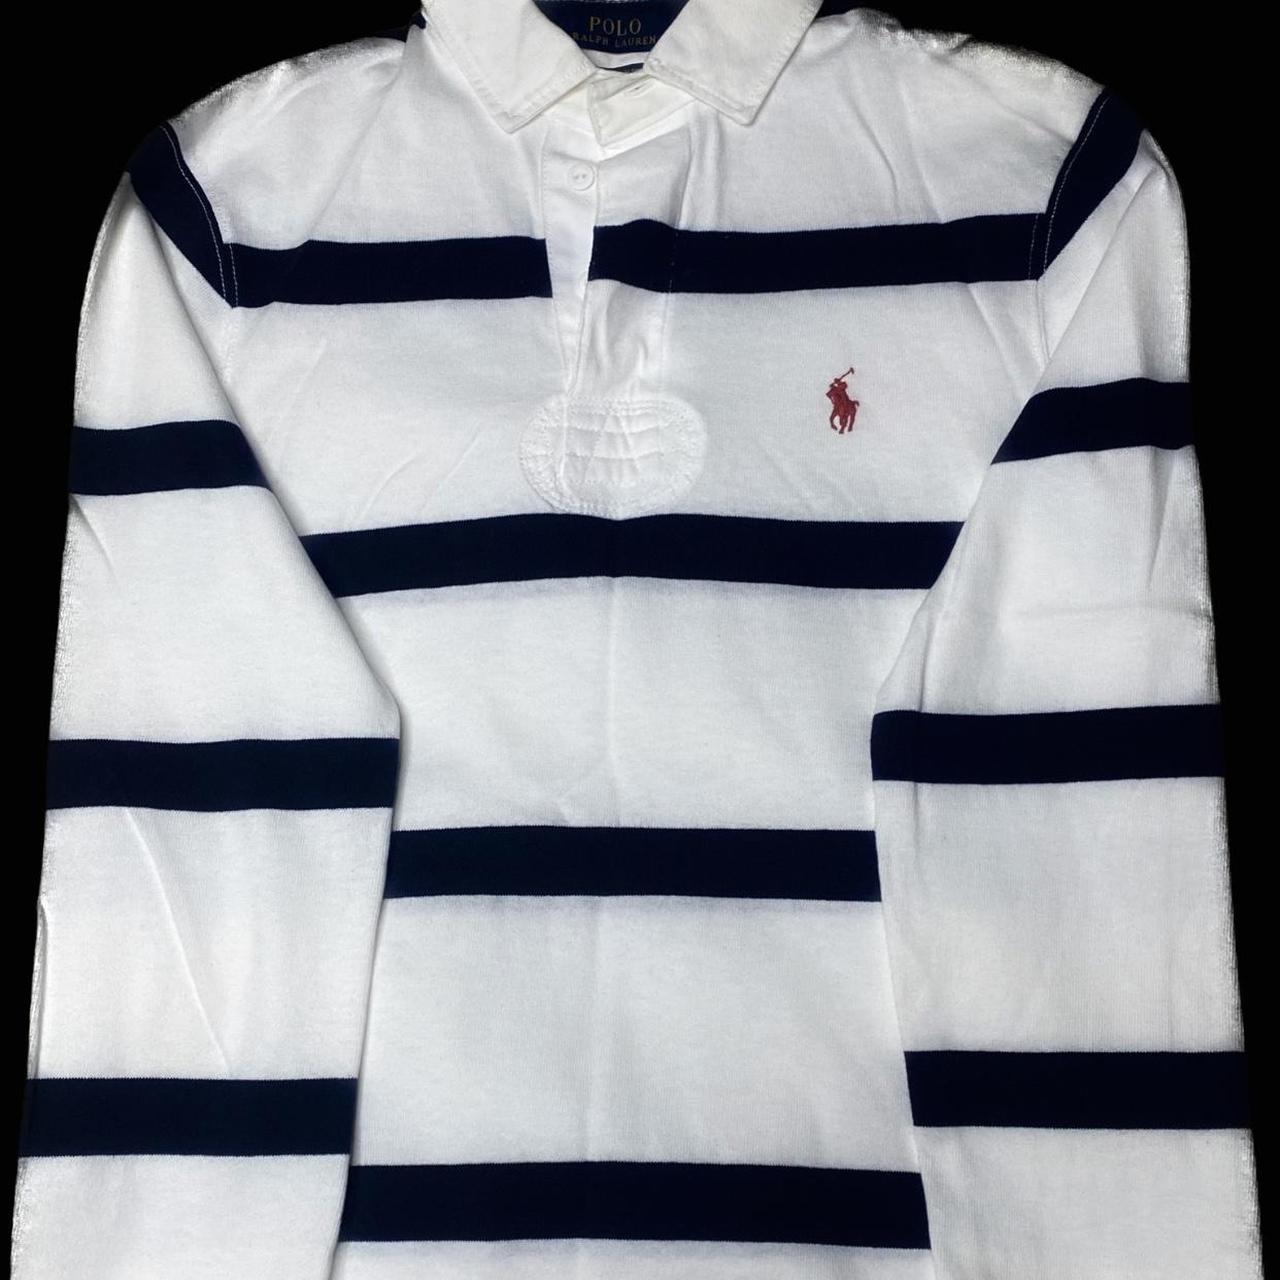 Polo Ralph Lauren long sleeve t shirt Size:... - Depop